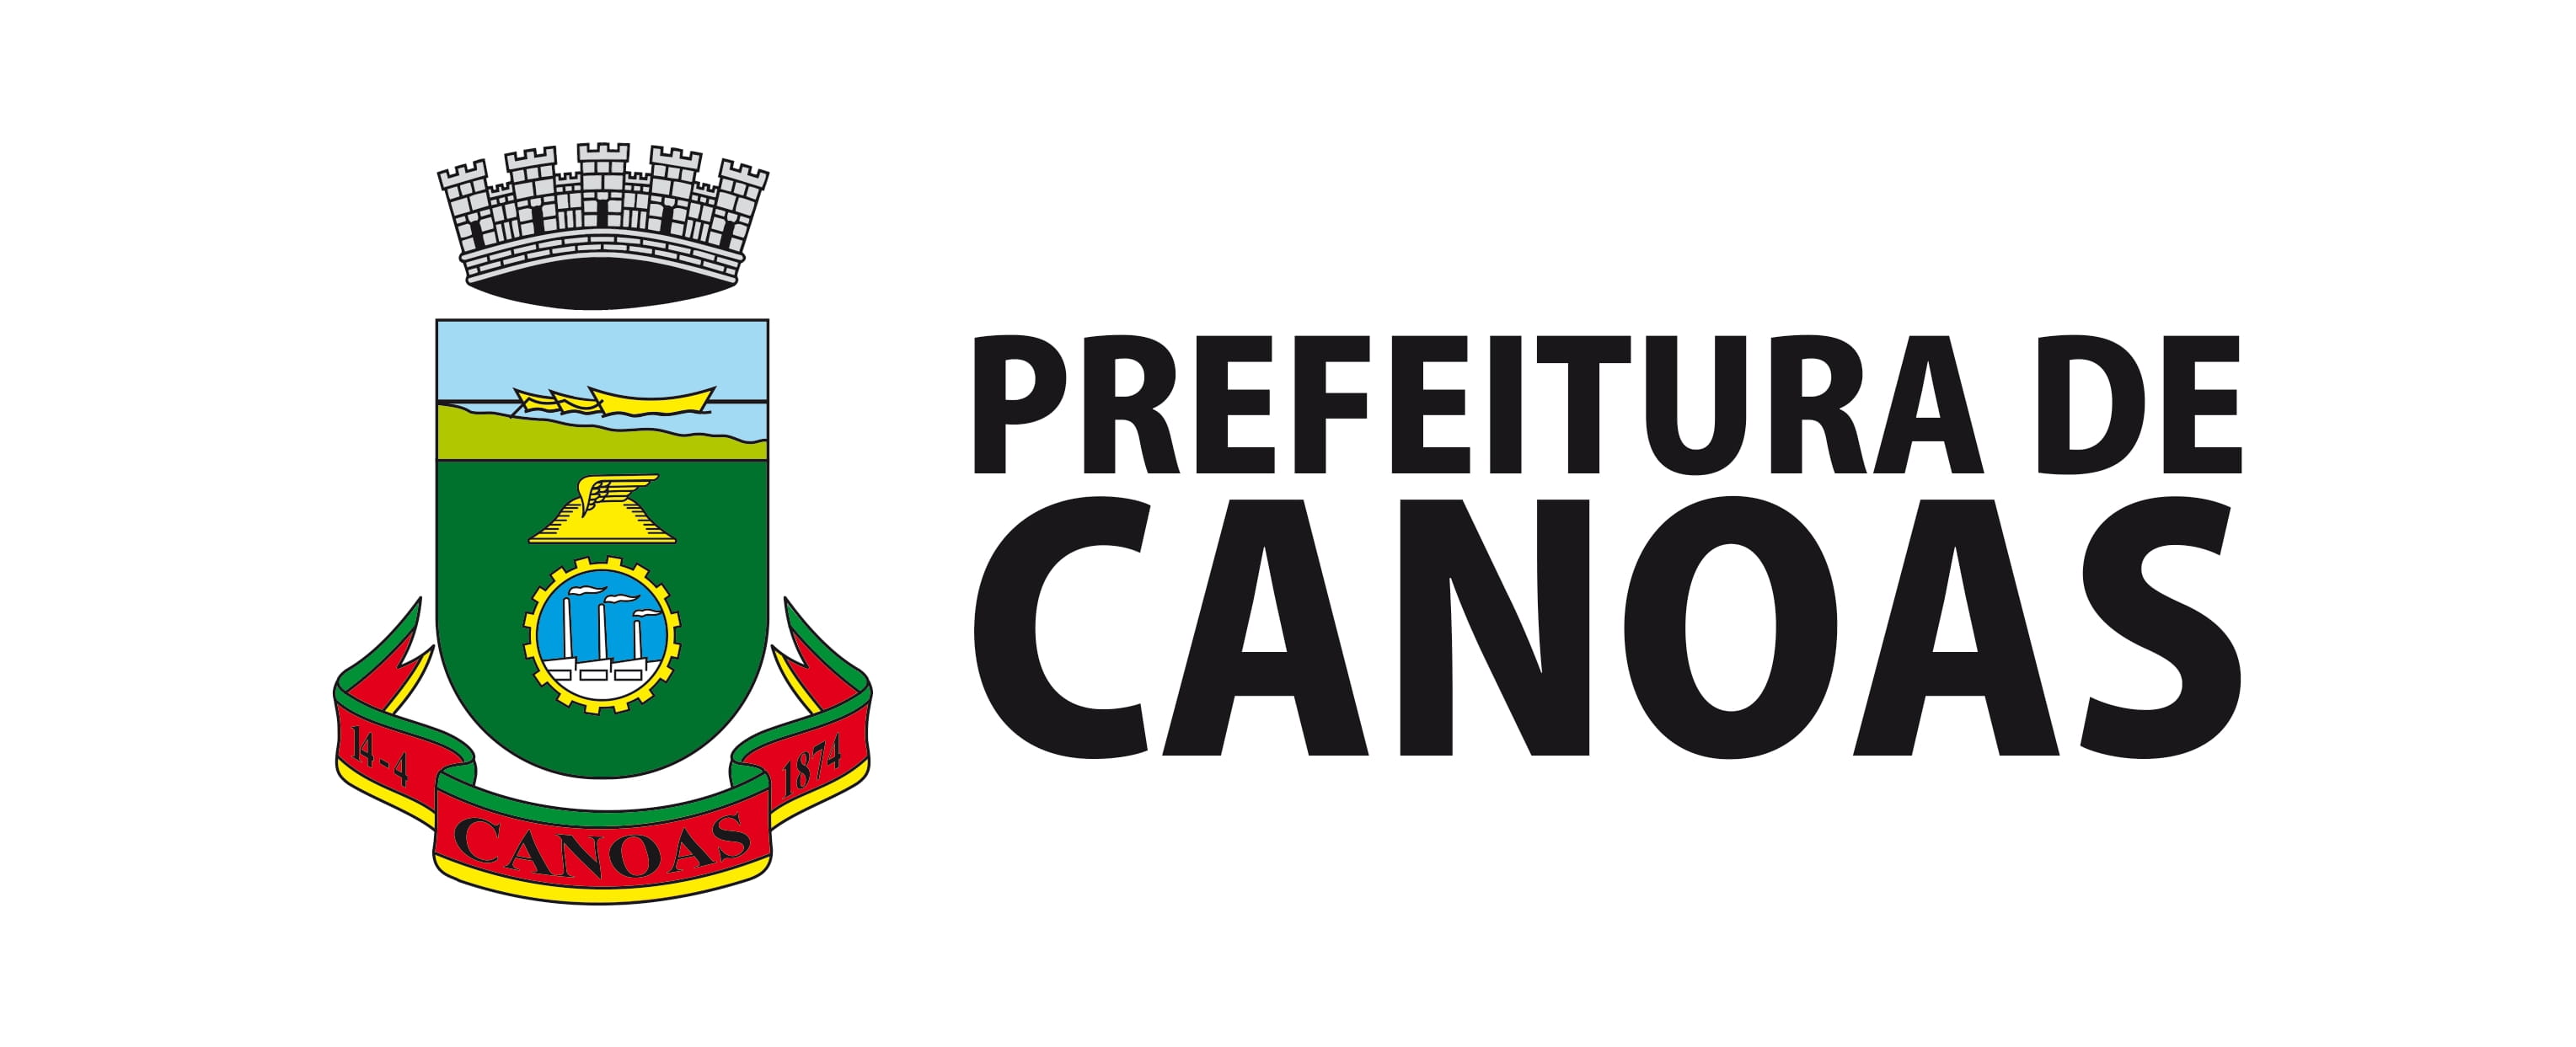 Brasao Pref canoas REDESENHADO CMYK (1)-1